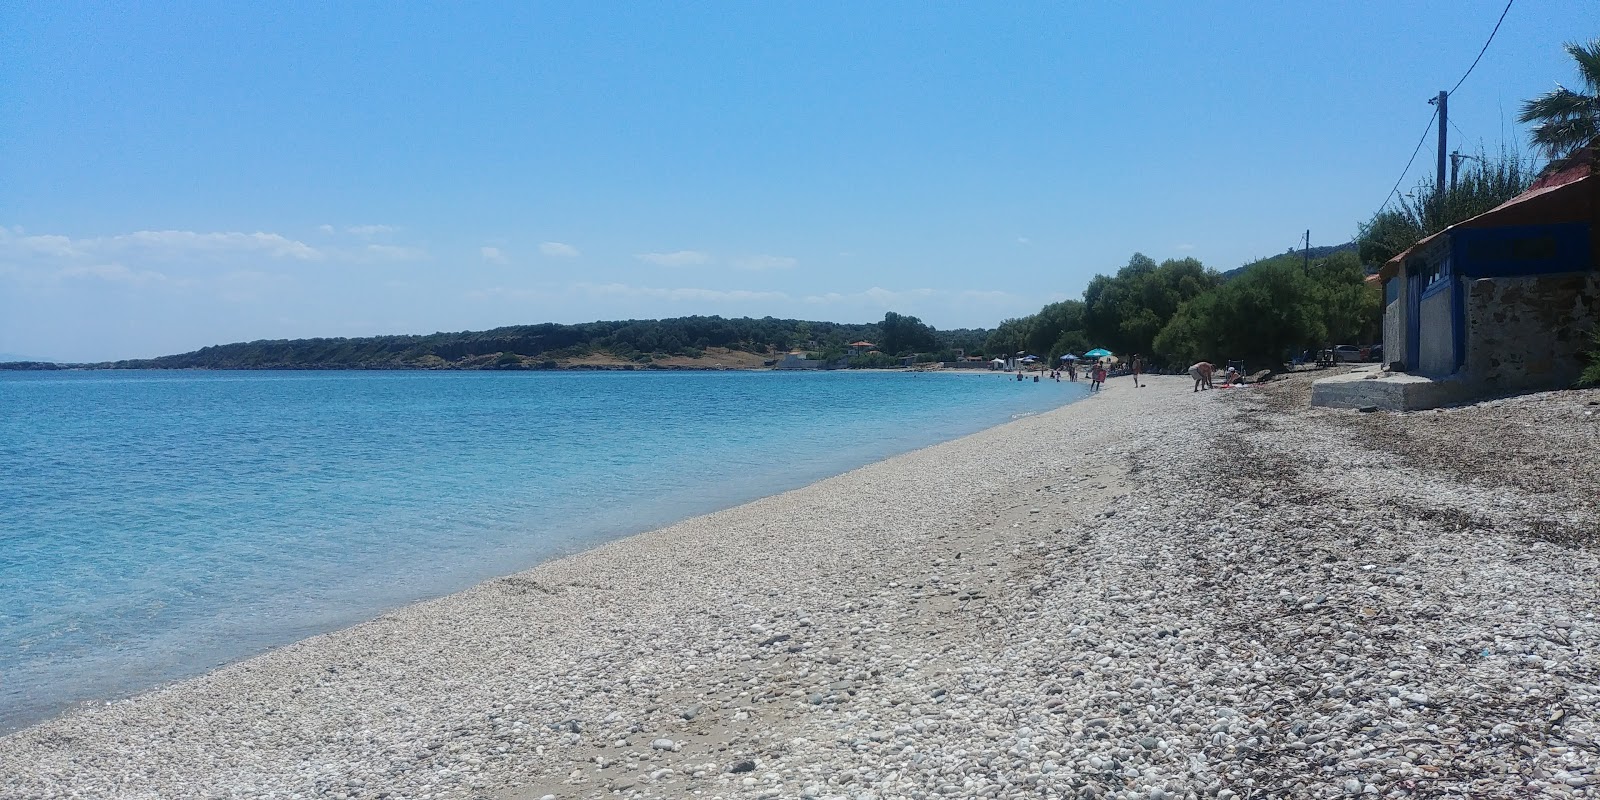 Smkra Smyrnios III Plajı'in fotoğrafı plaj tatil beldesi alanı